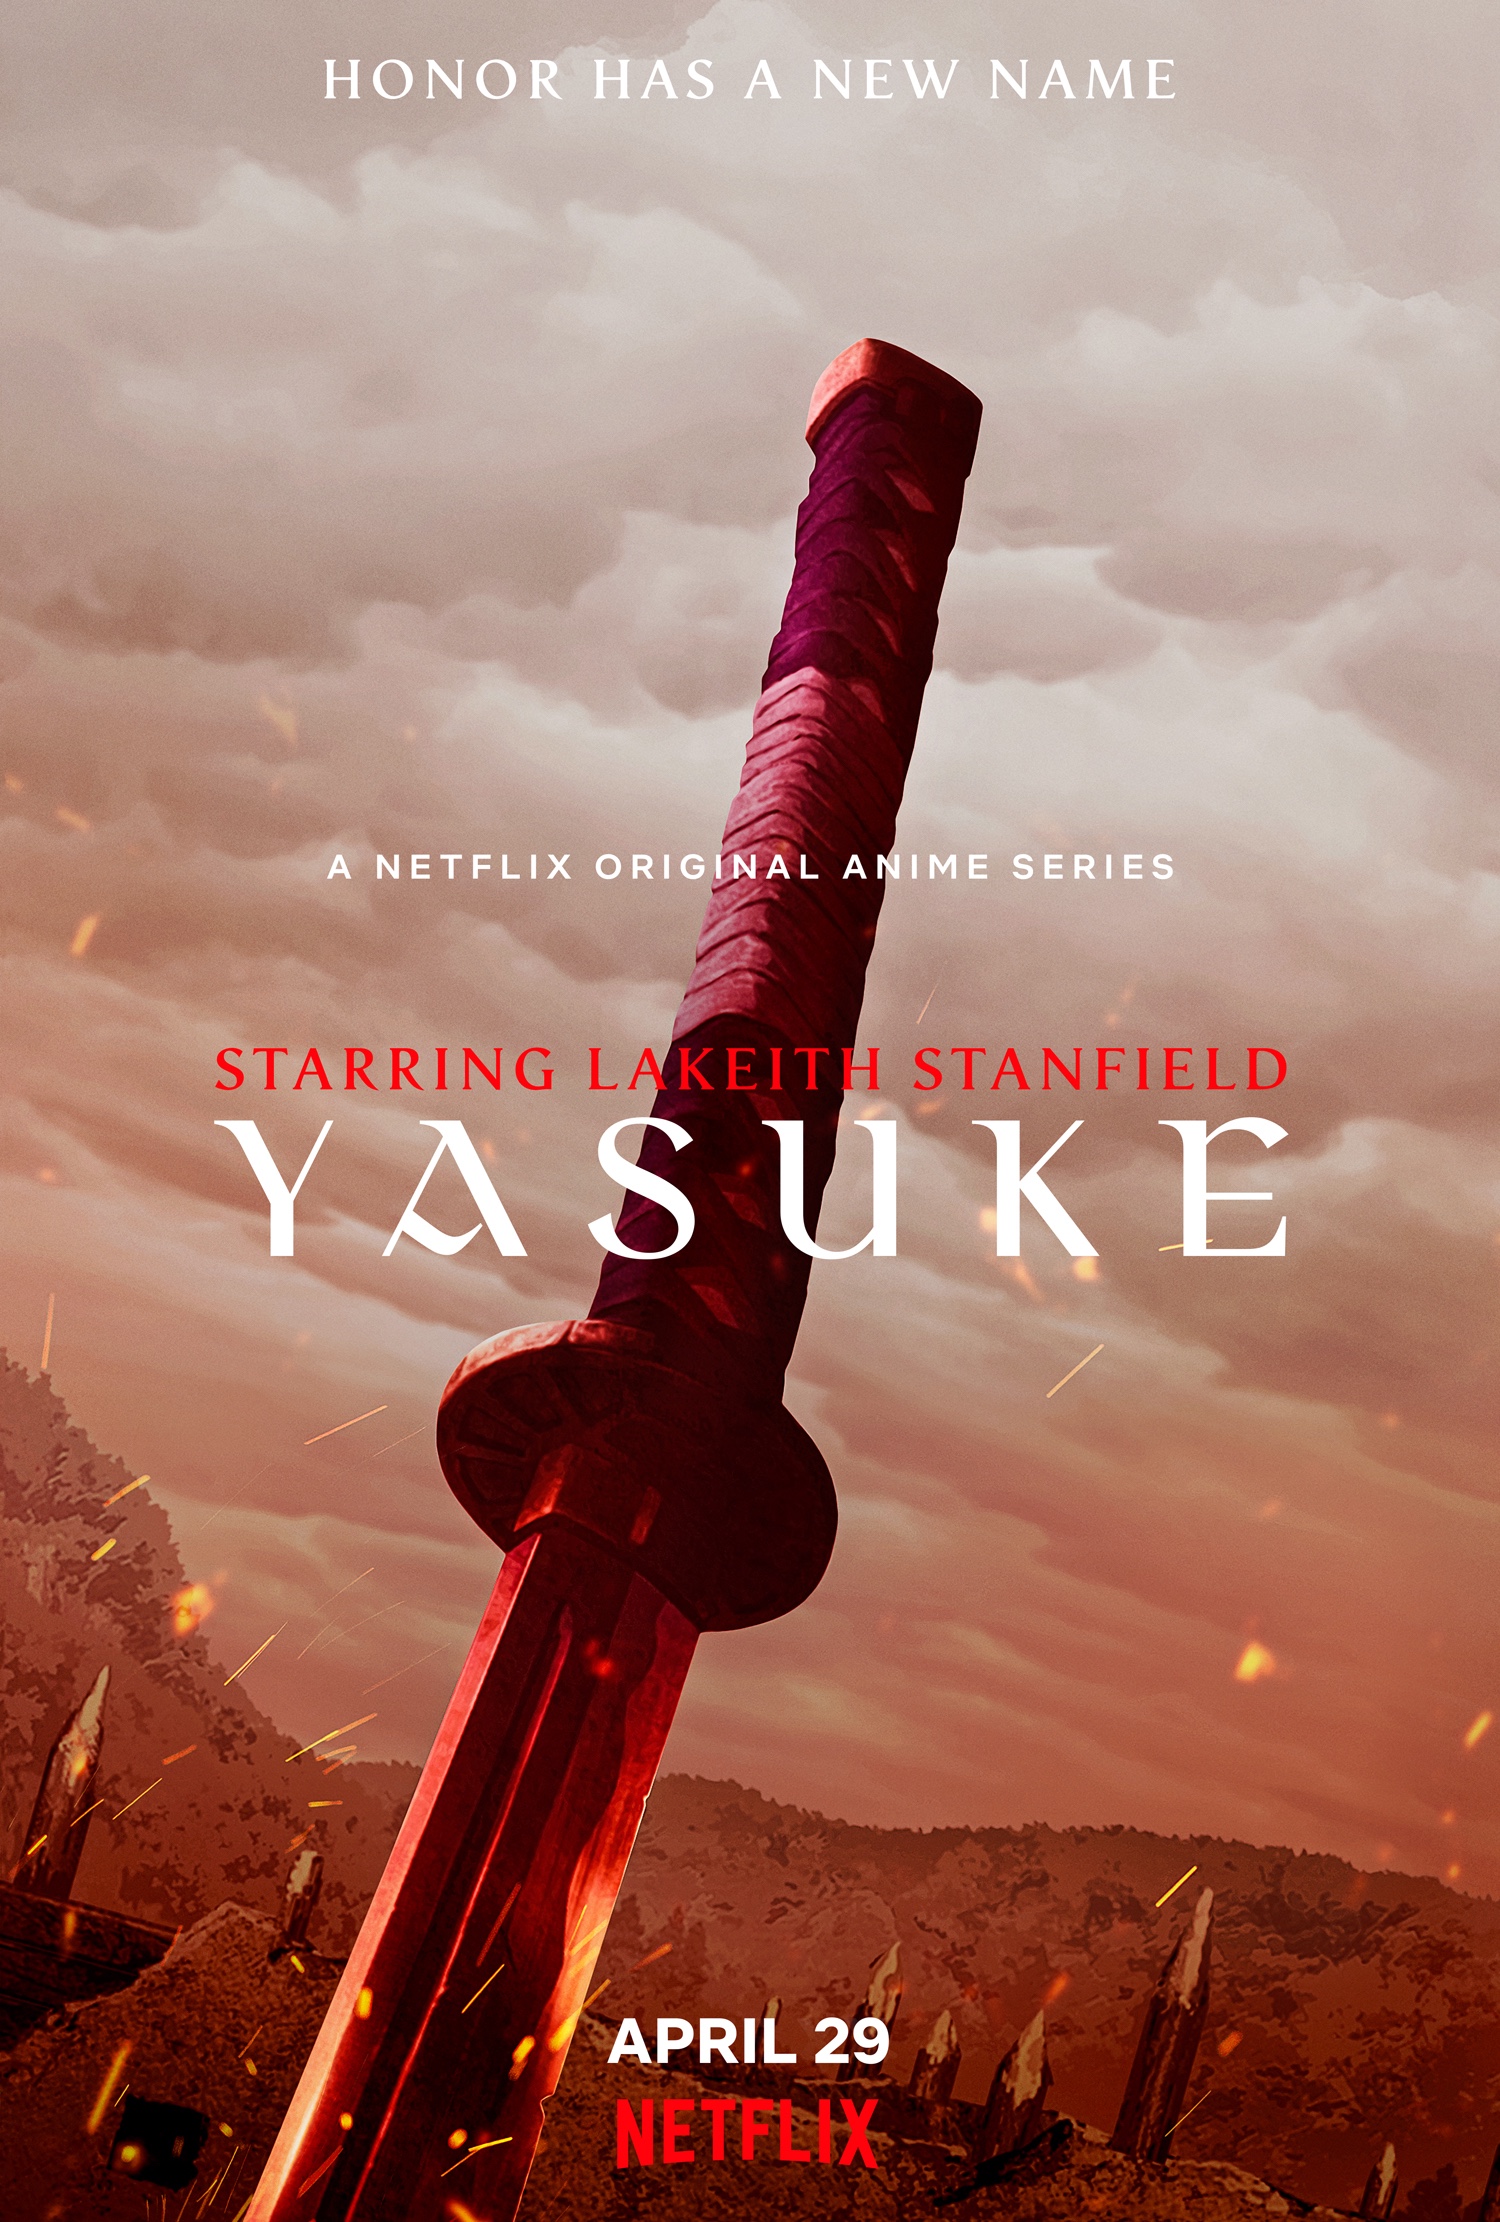 Yasuke poster. (Image: Netflix)